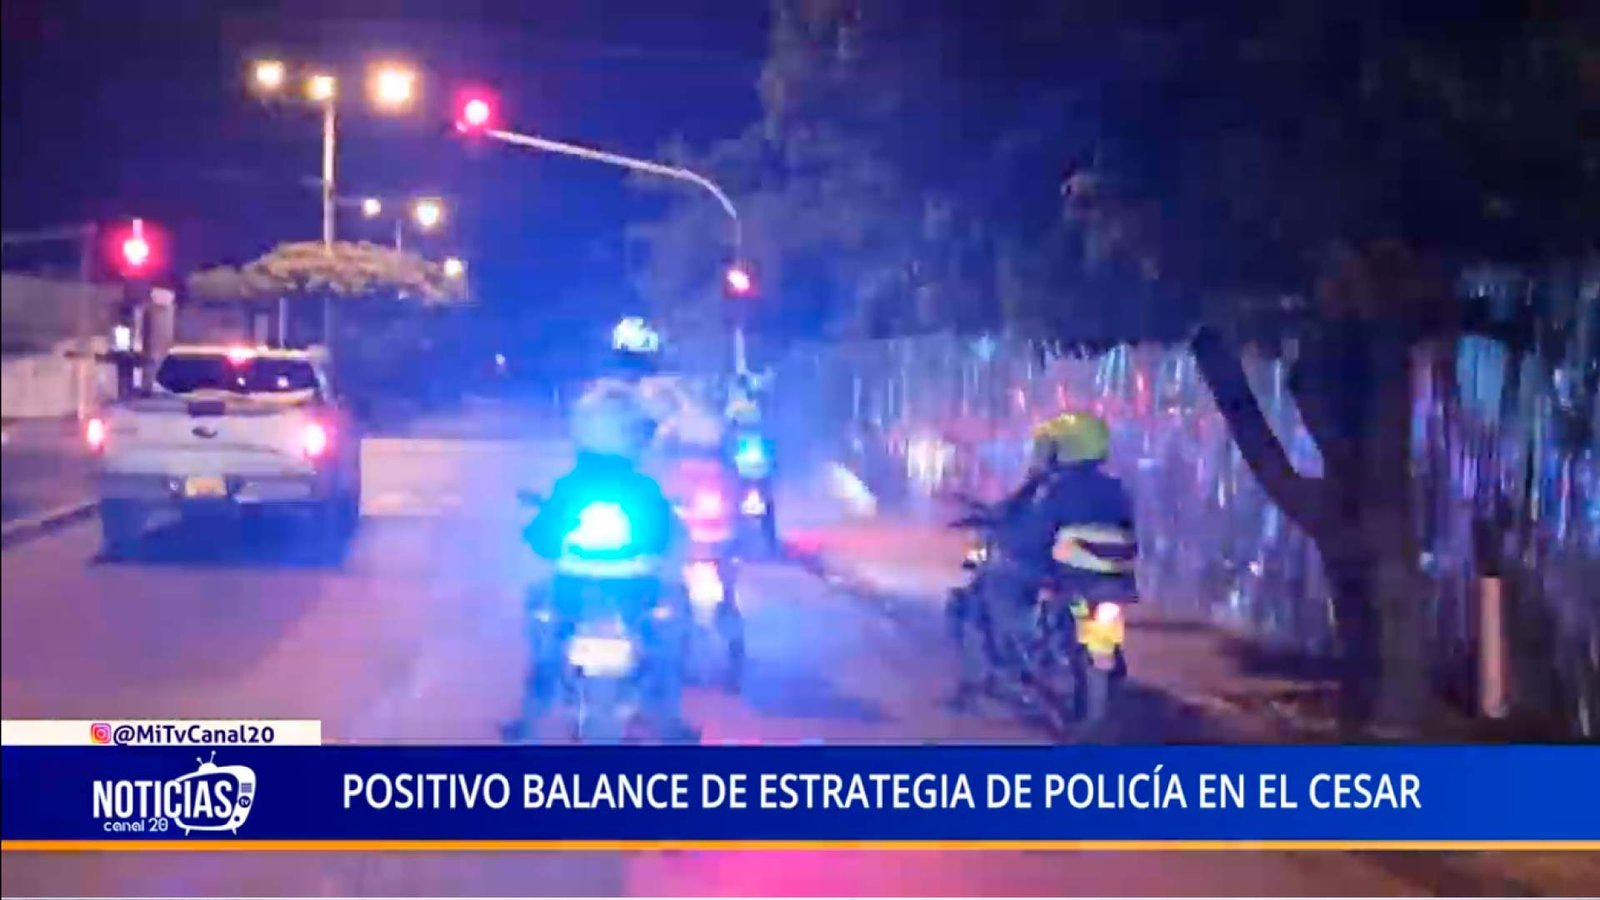 POSITIVO BALANCE DE ESTRATEGIA DE POLICÍA EN EL CESAR